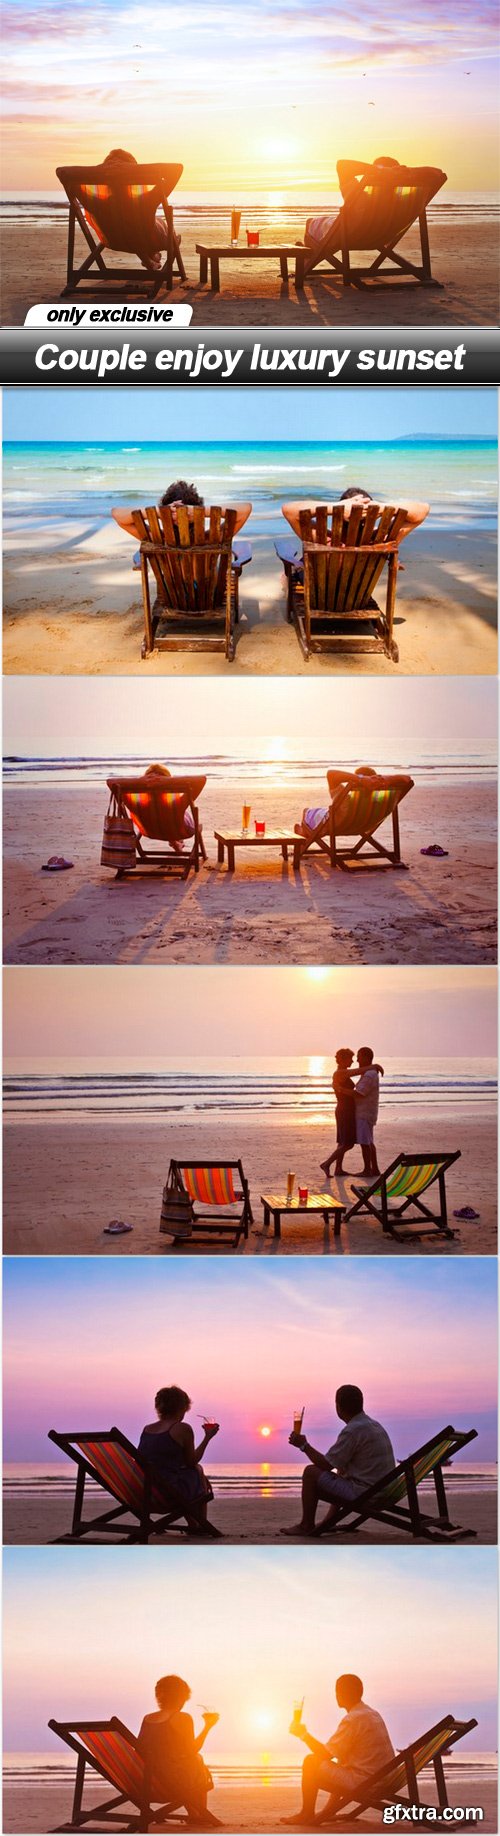 Couple enjoy luxury sunset - 6 UHQ JPEG